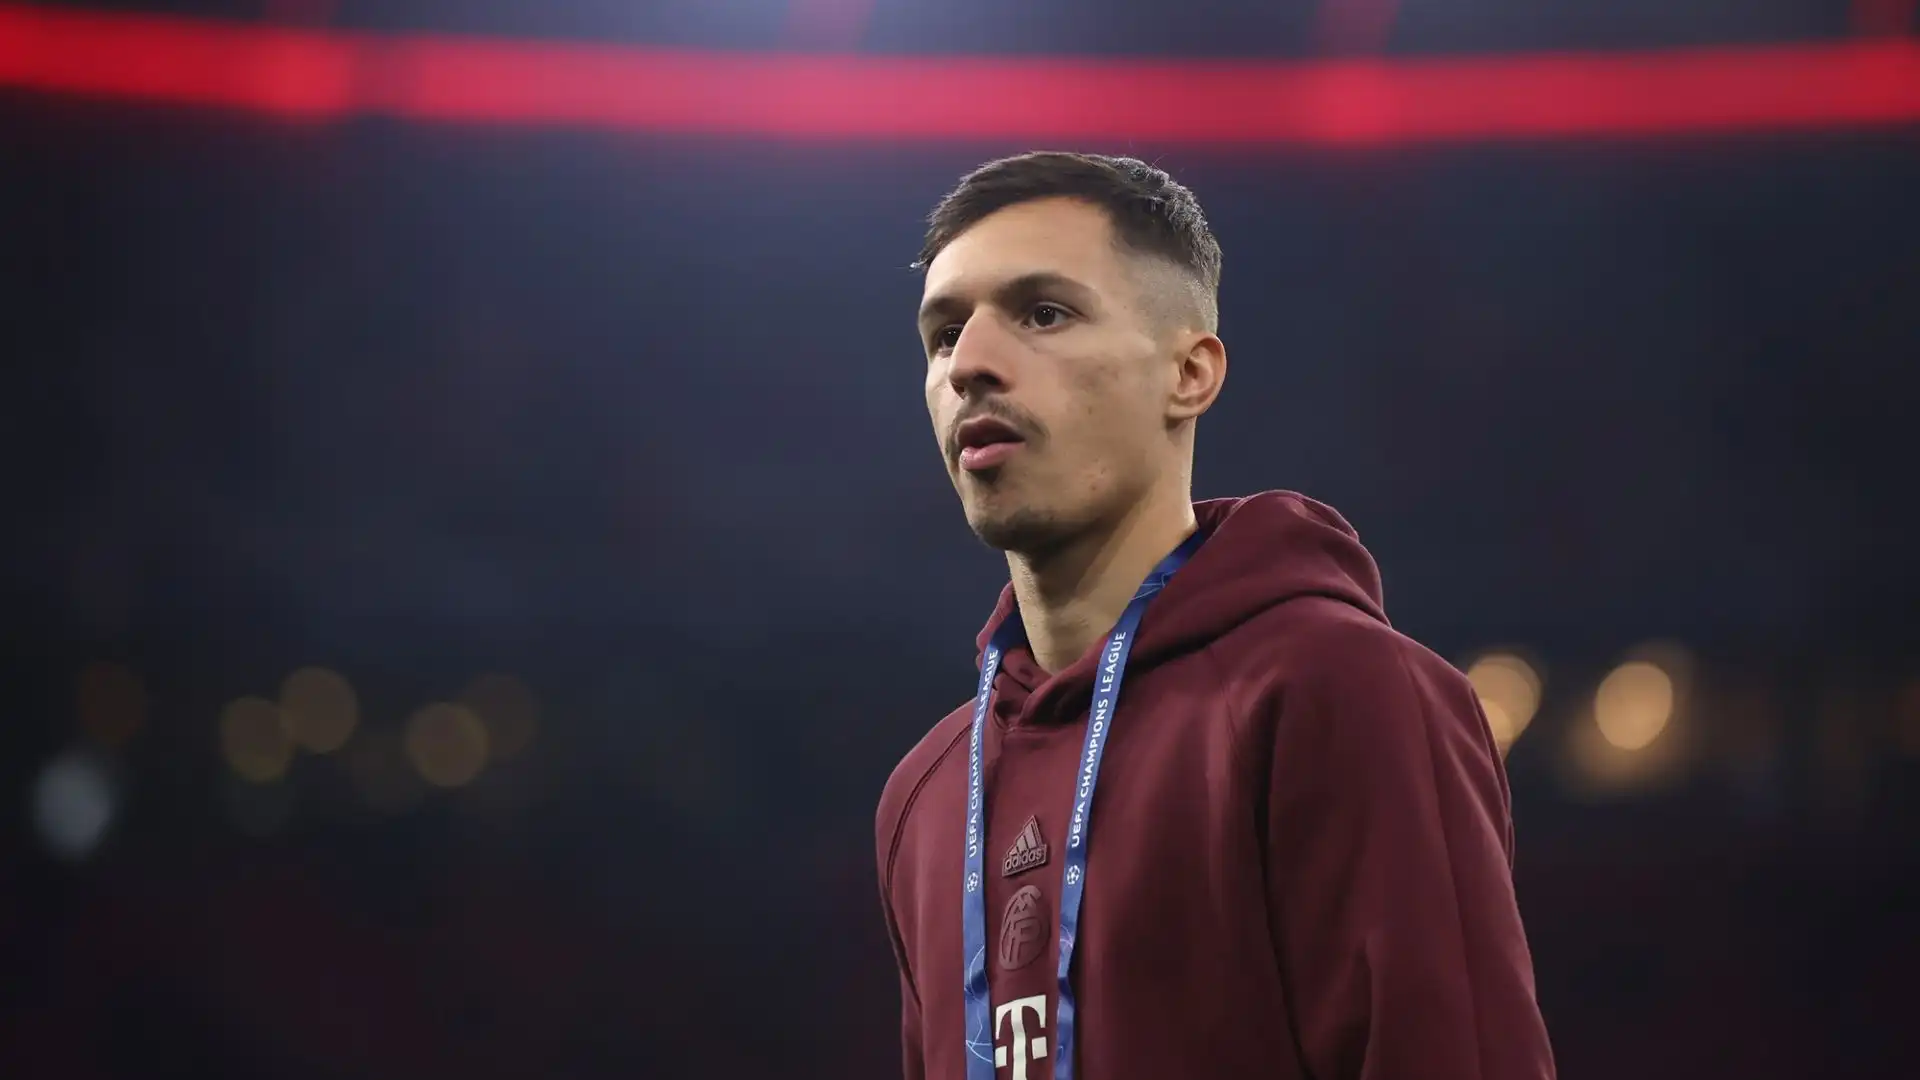 Il Bayern Monaco deciderà il futuro del giocatore solo dopo l'annuncio del nuovo allenatore